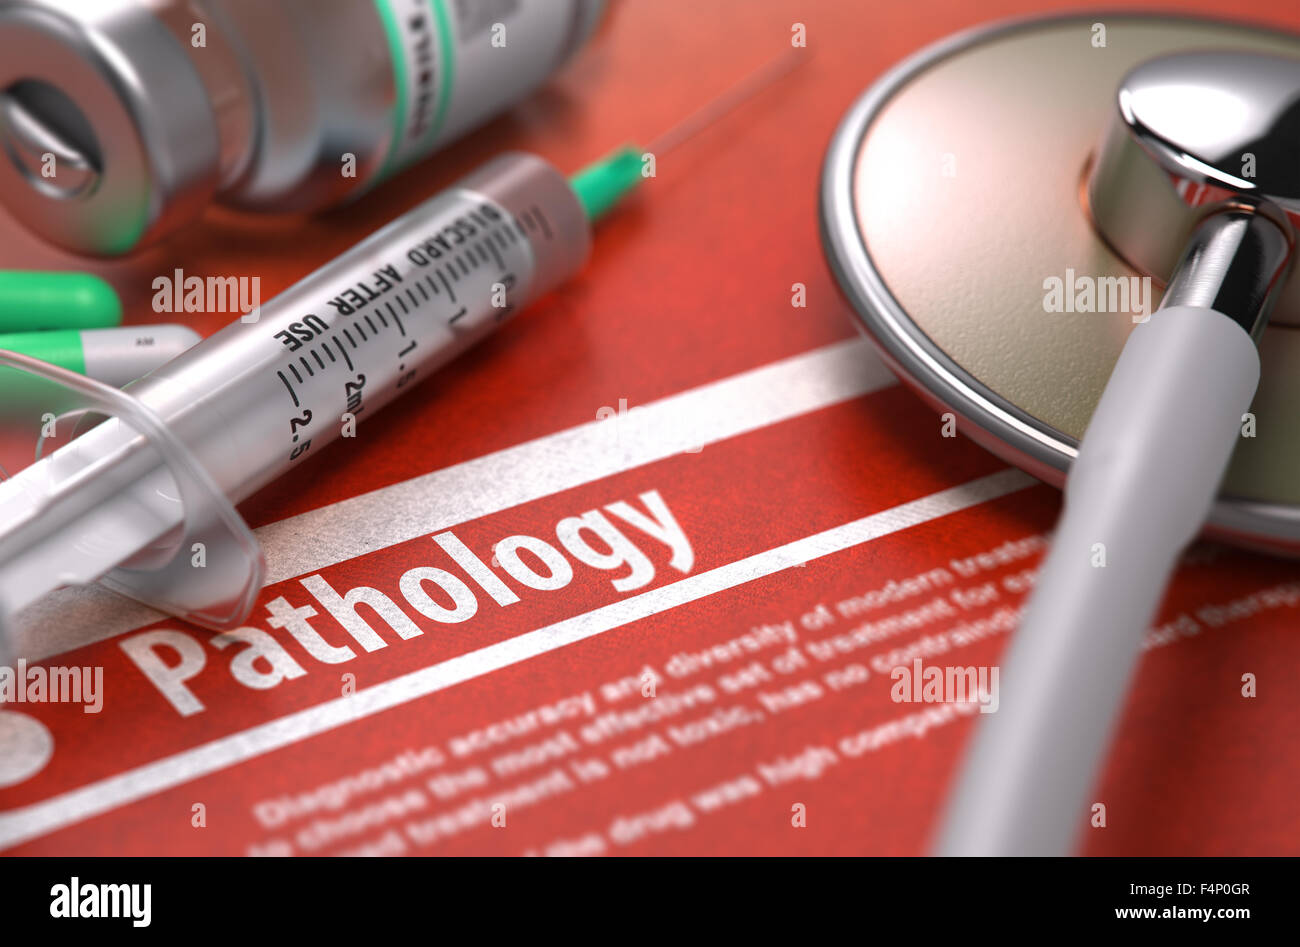 Pathologie - medizinisches Konzept auf orangem Hintergrund und medizinische Zusammensetzung - Stethoskop, Pillen und Spritze. Unscharfes Bild. Stockfoto